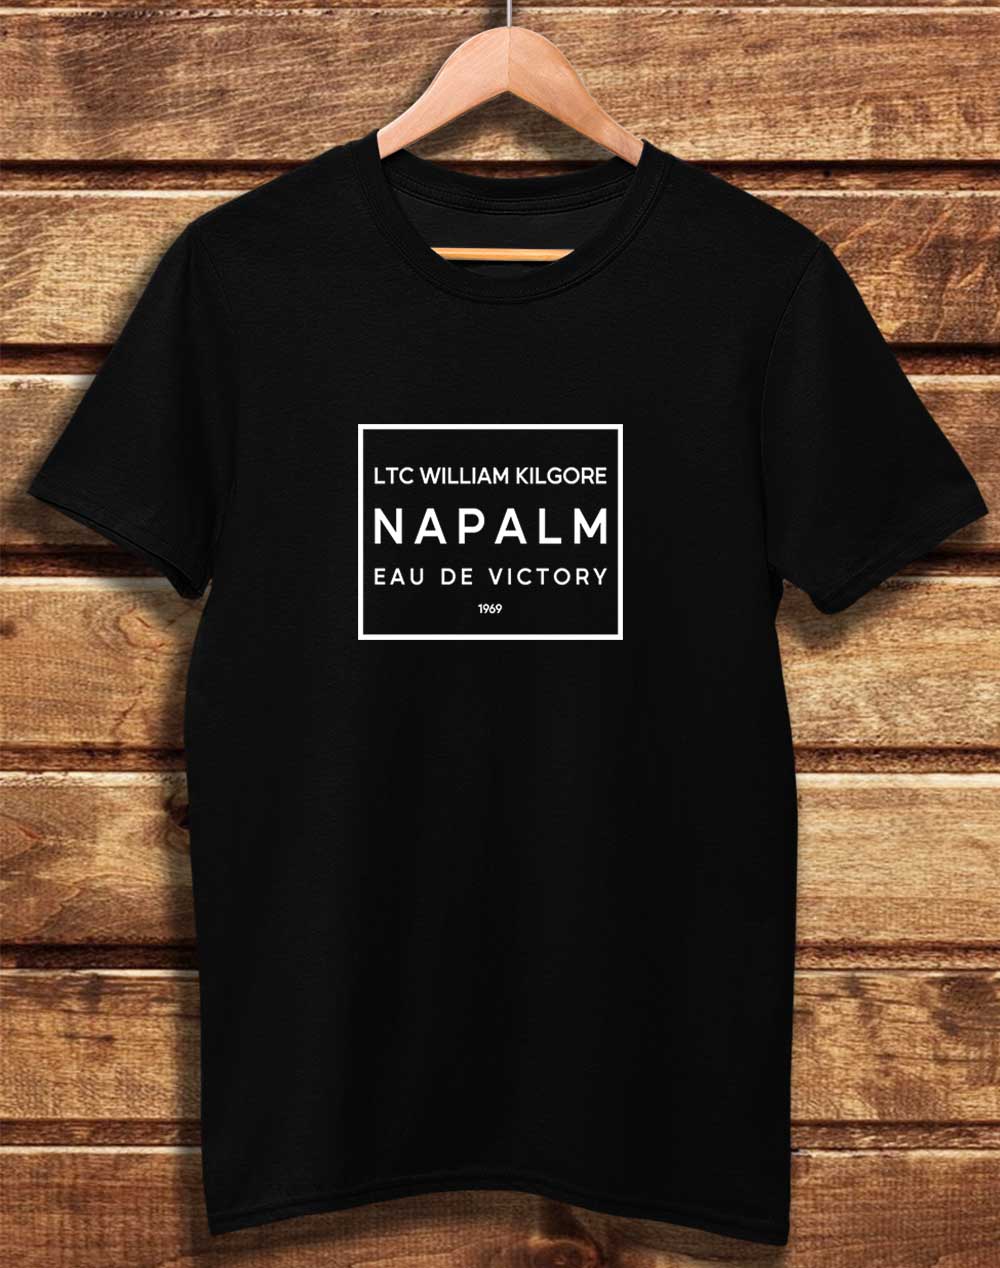 Black - DELUXE Kilgore's Napalm Eau De Victory 1969 Organic Cotton T-Shirt